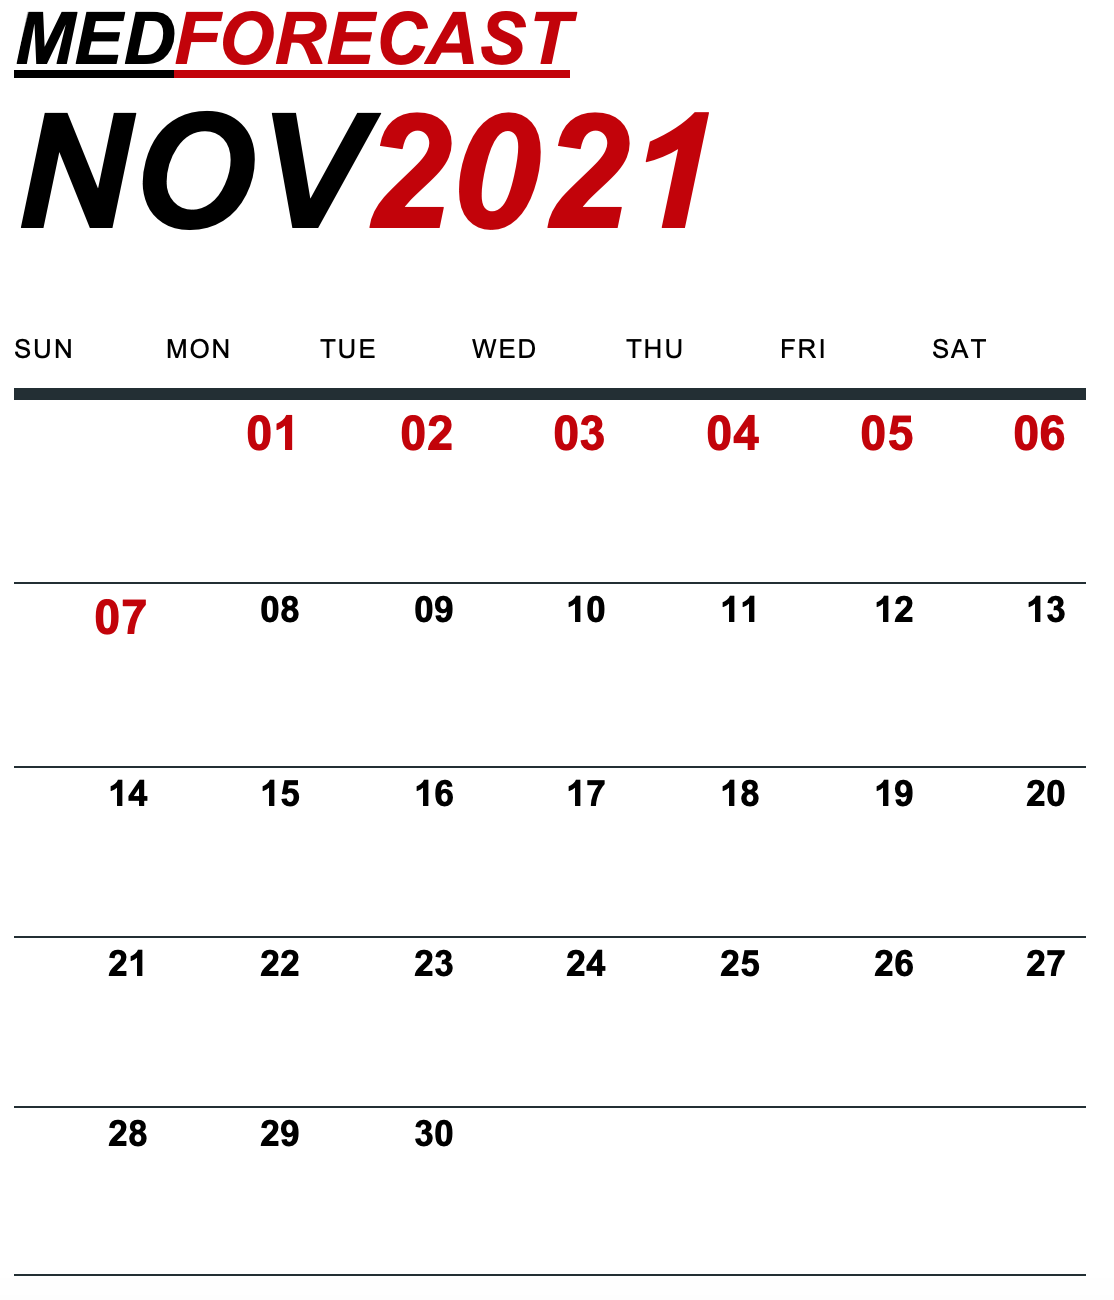 Medical News Forecast for November 1-7